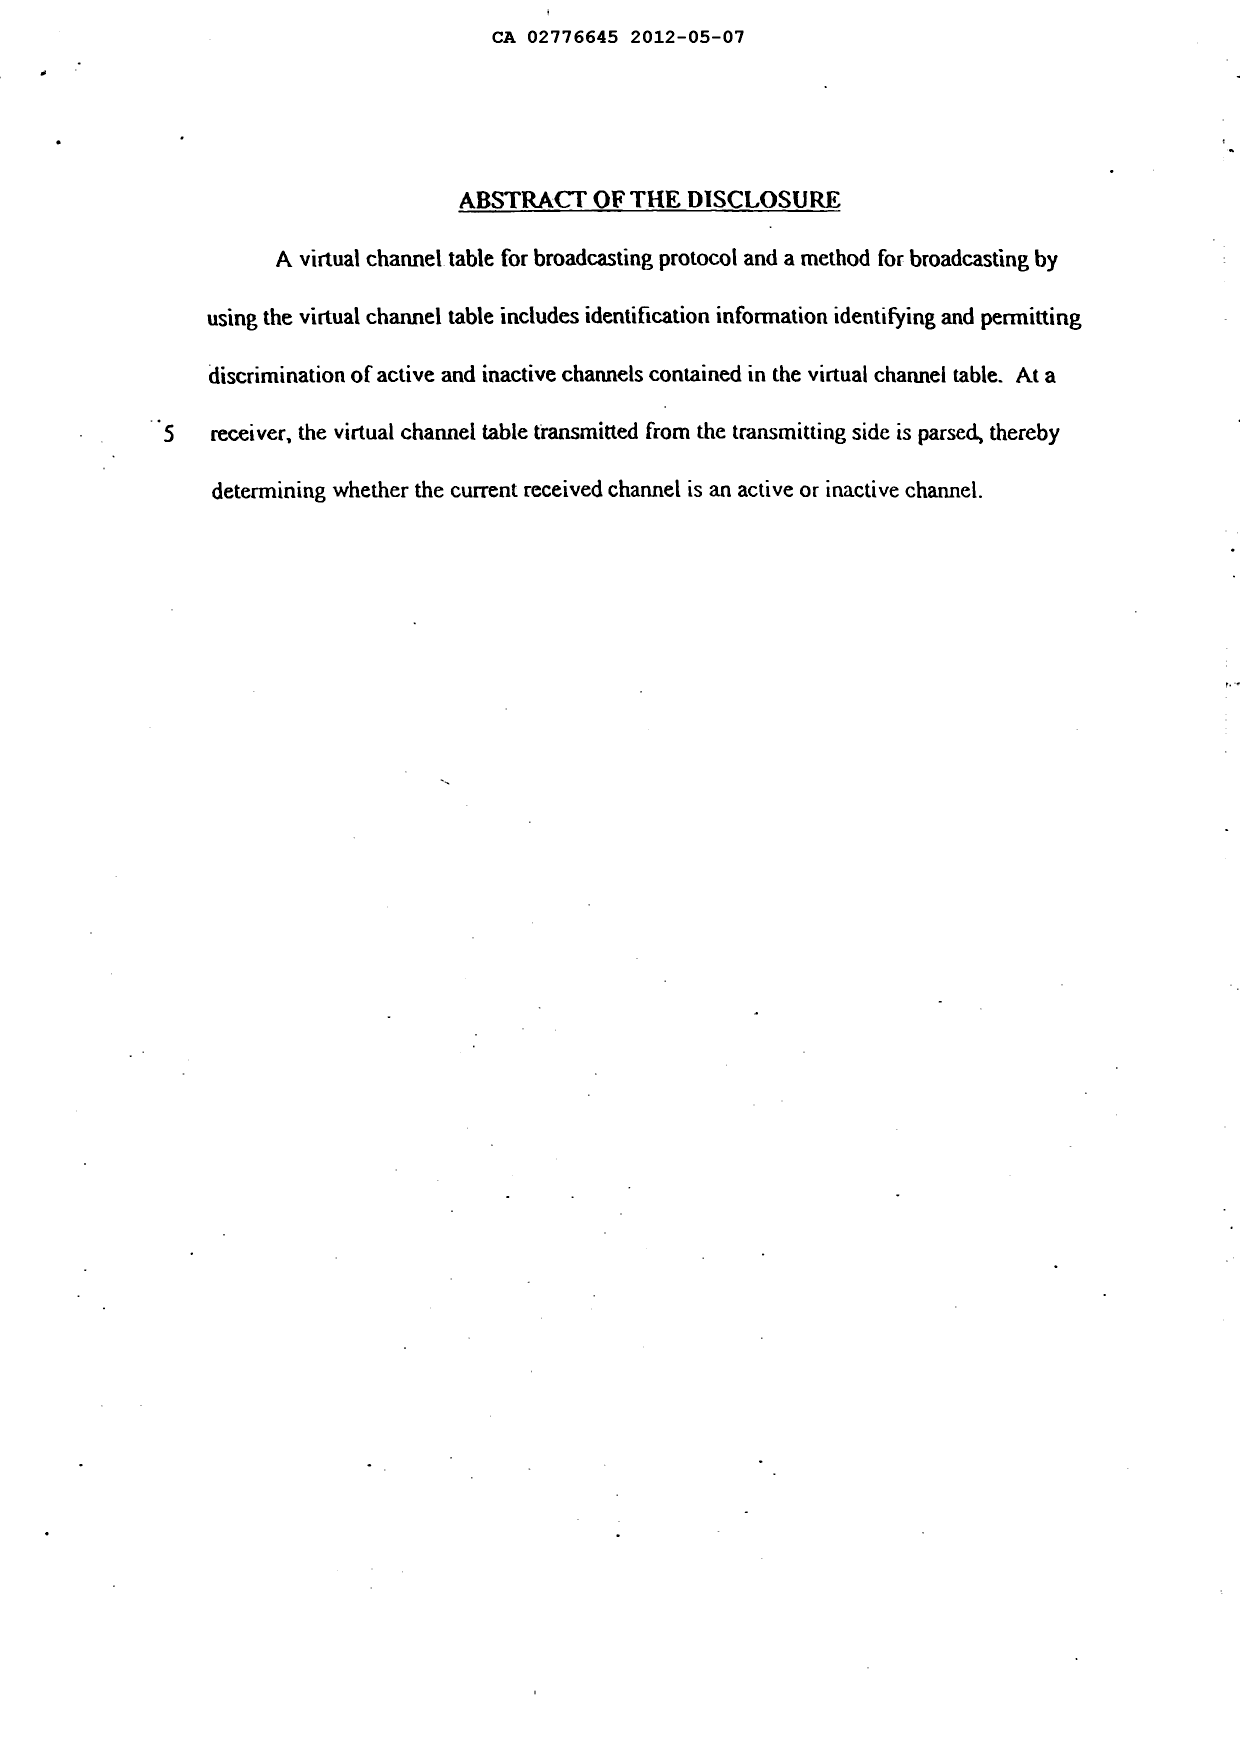 Document de brevet canadien 2776645. Abrégé 20120507. Image 1 de 1